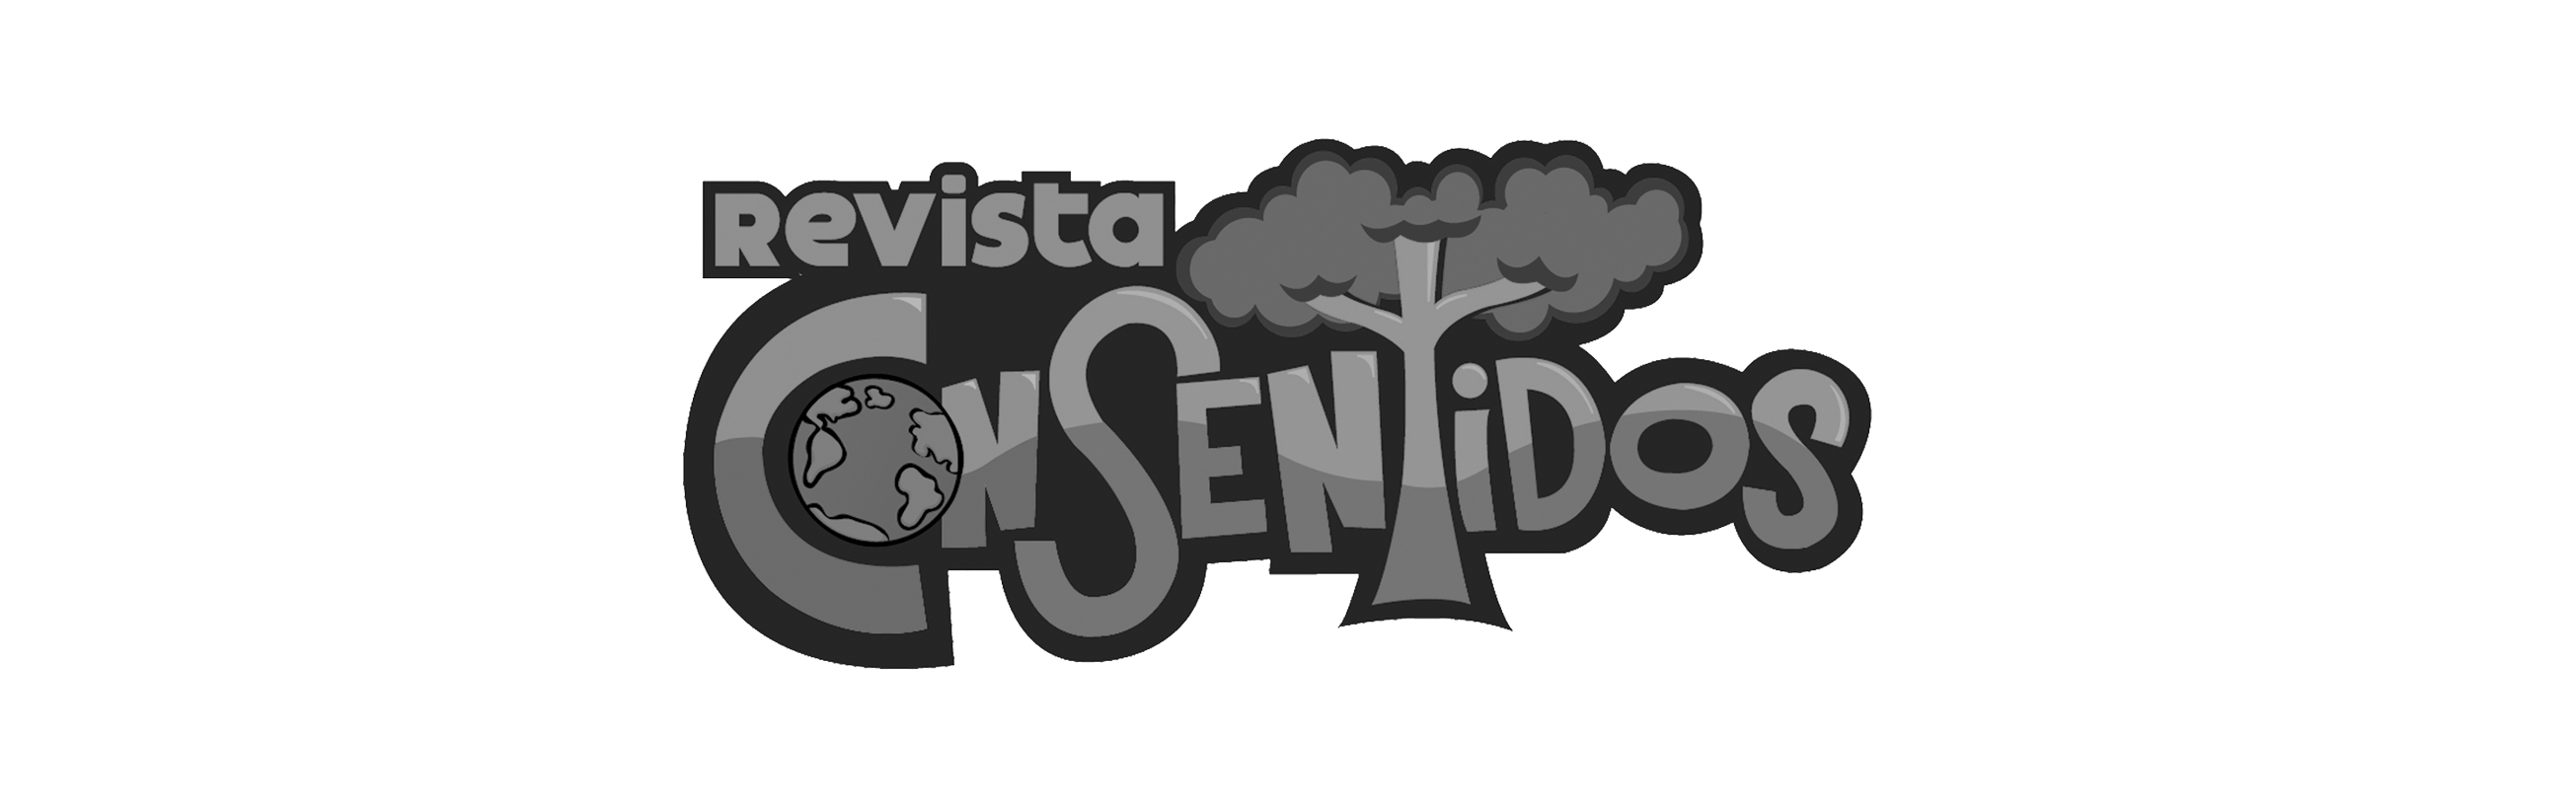 logo_consentidos_bn